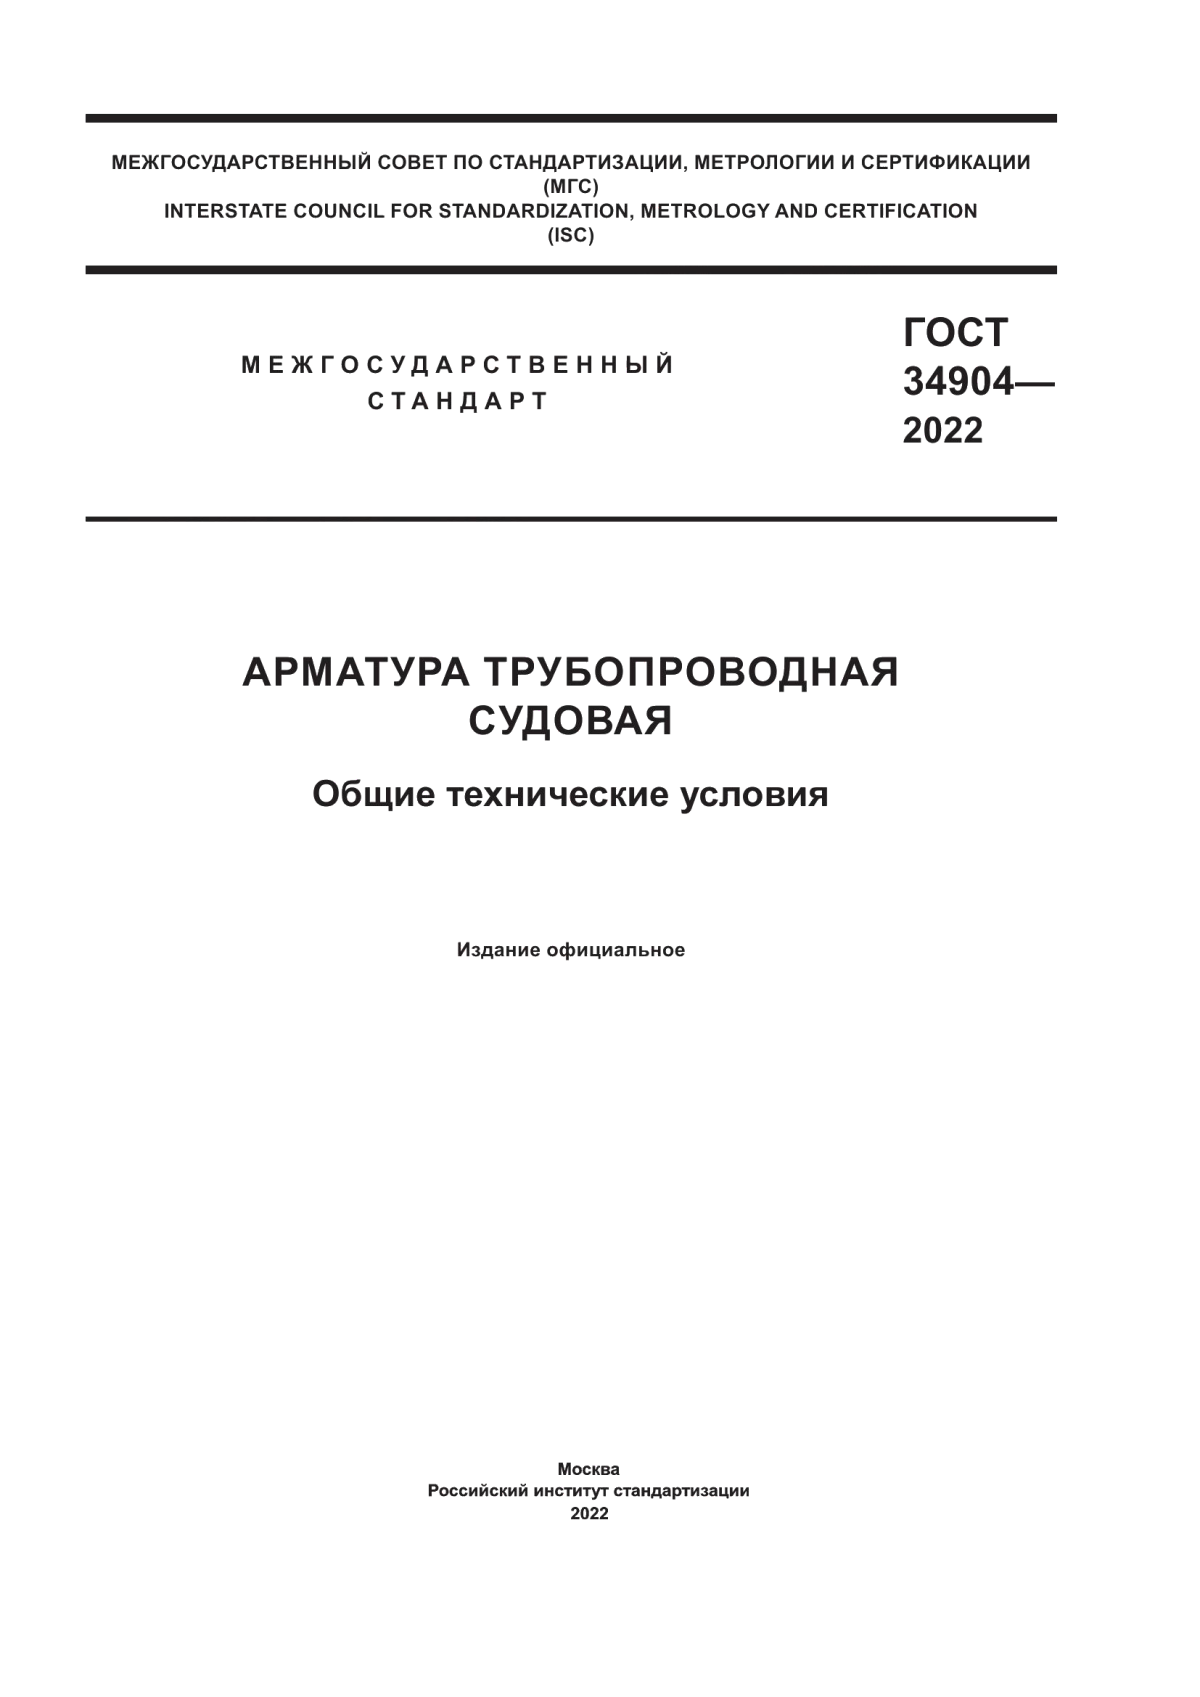 ГОСТ 34904-2022 Арматура трубопроводная судовая. Общие технические условия